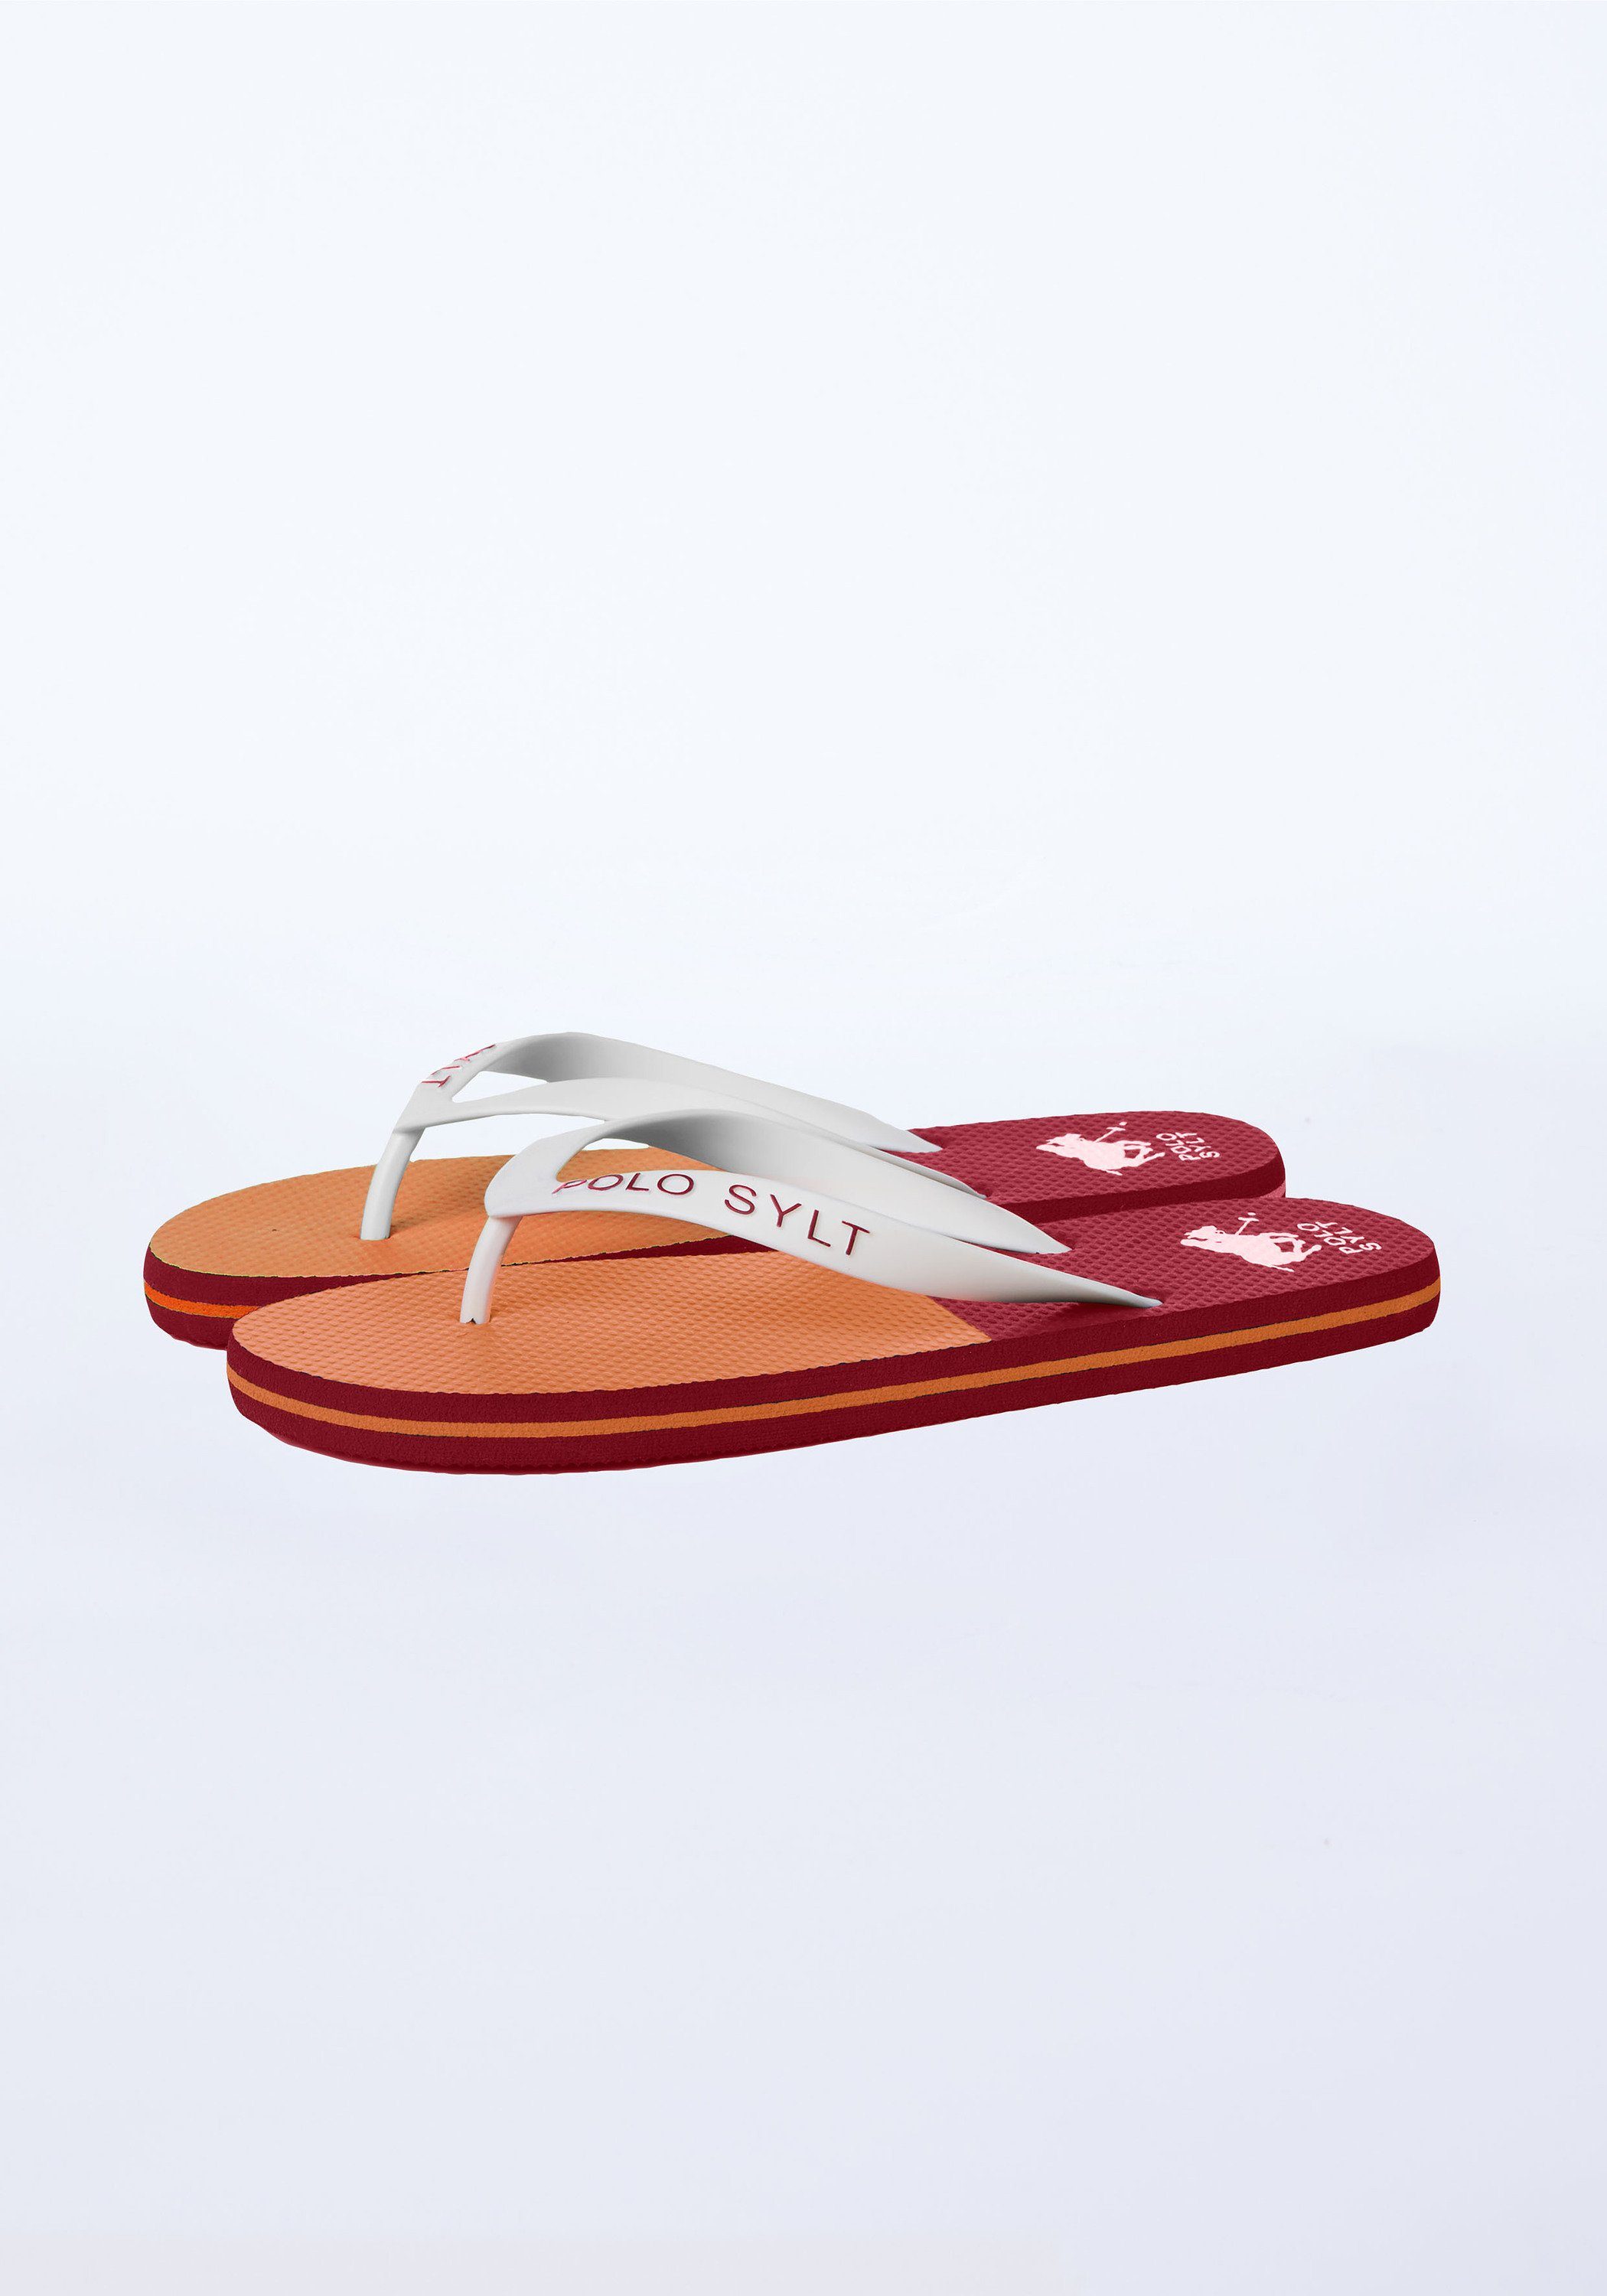 Polo Sylt Unisex Zehentrenner 2621 im Label-Design Red/Orange Dark